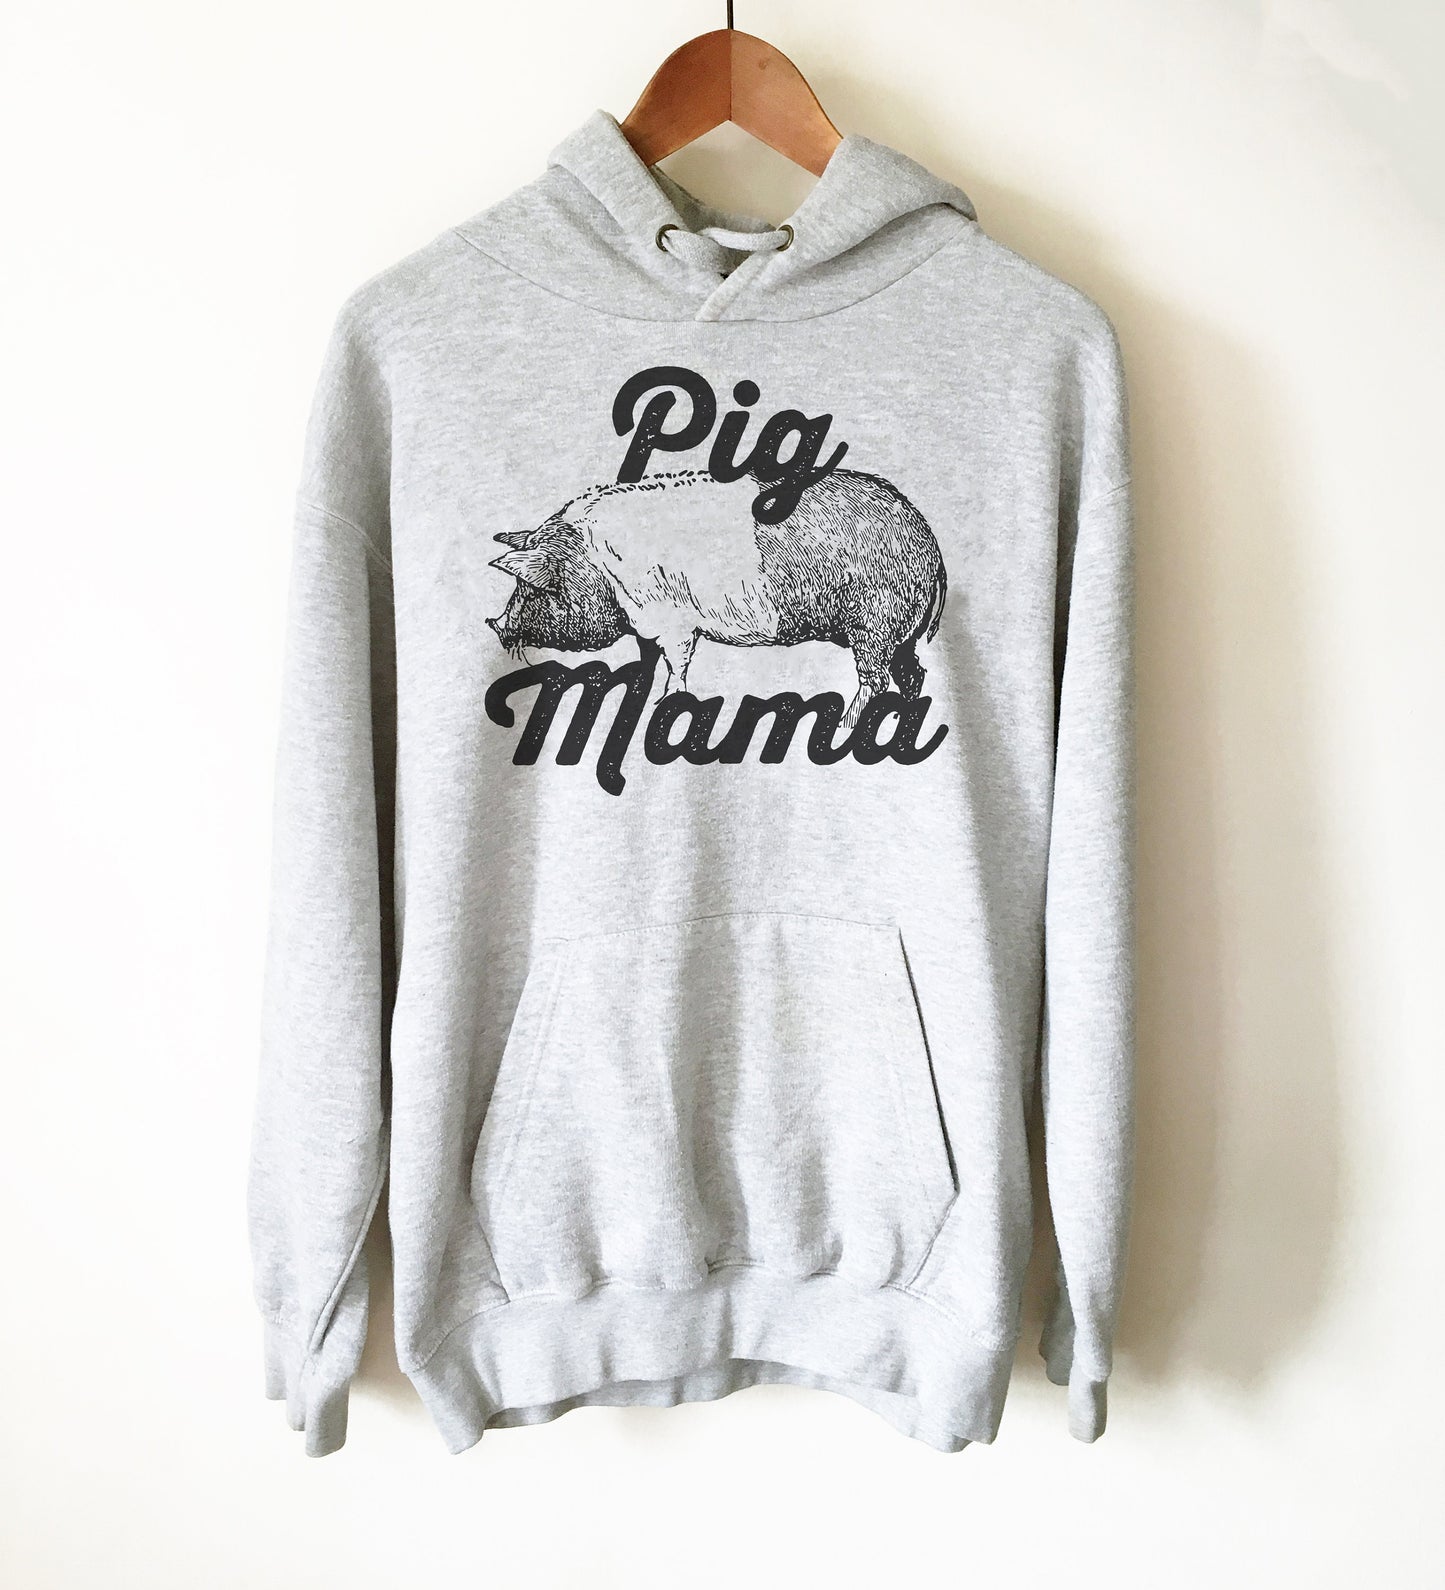 Pig Mama Hoodie - Pig Shirt, Pig